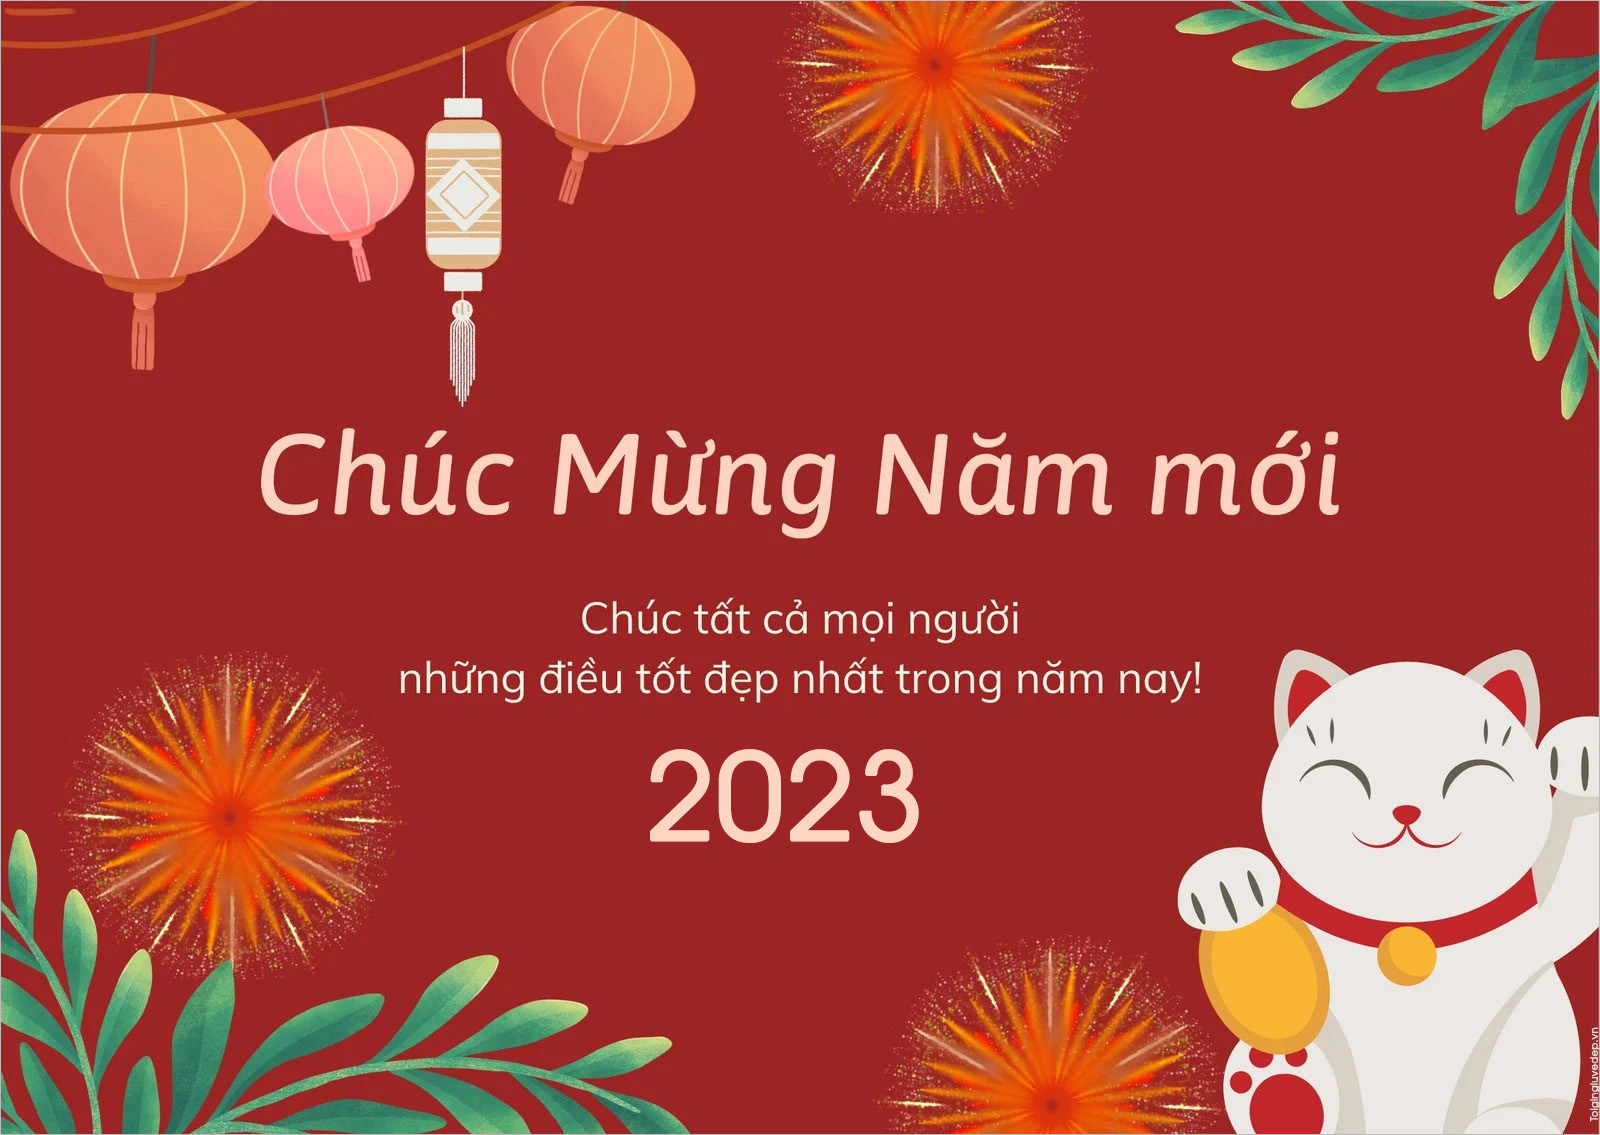 Chúc mừng năm mới 2023 thiệp đơn giản